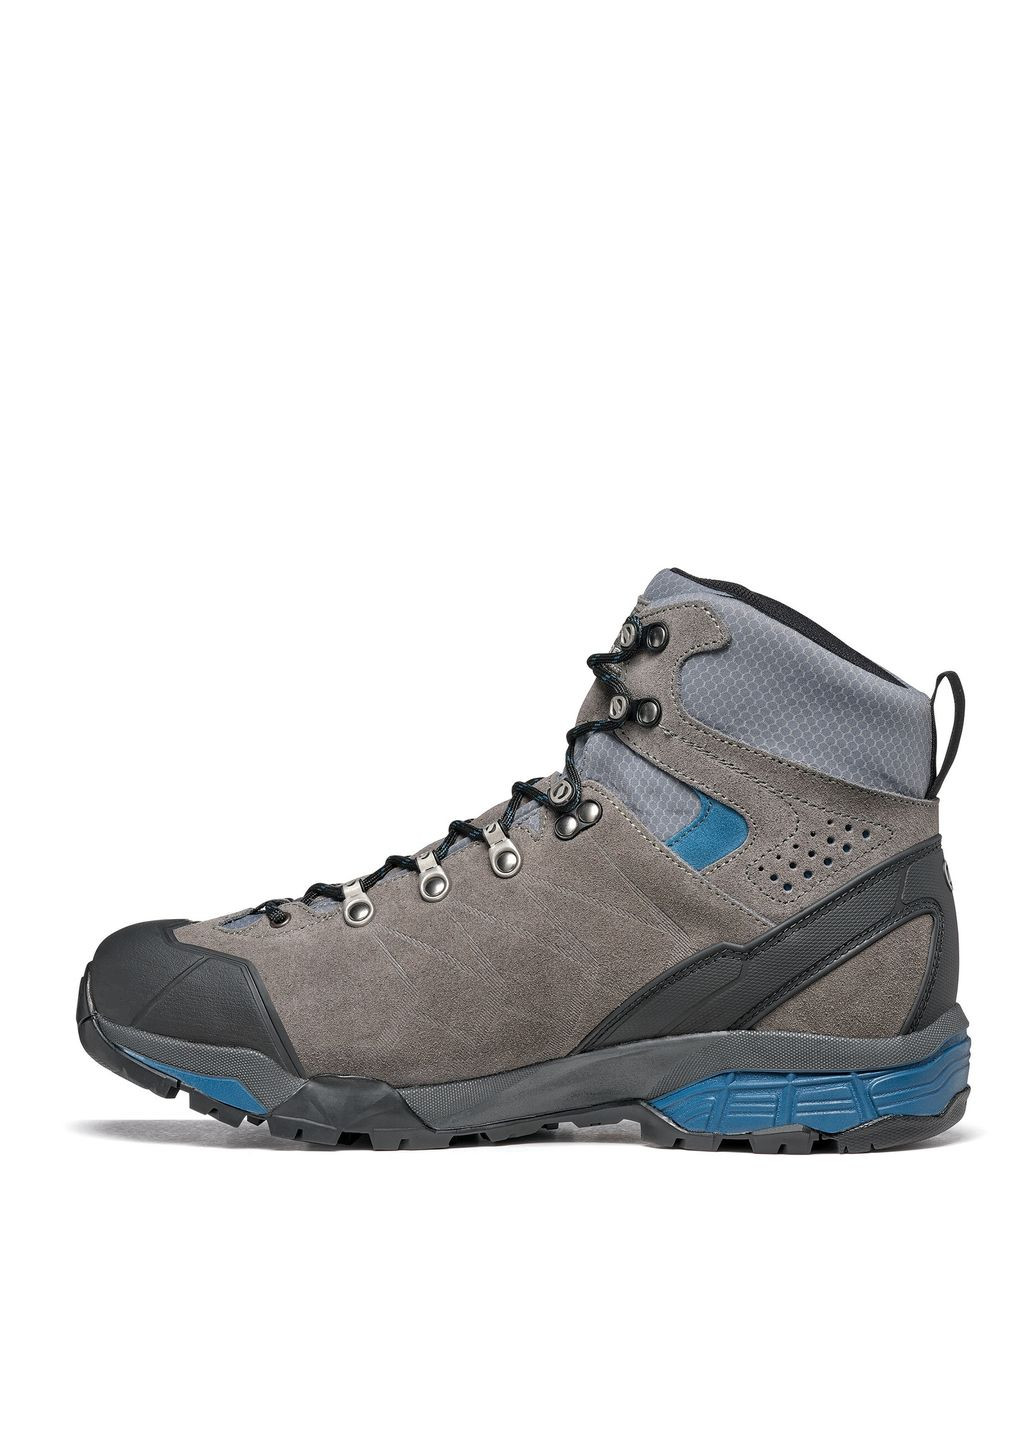 Цветные осенние ботинки мужские zg trek gtx wide серый-голубой Scarpa